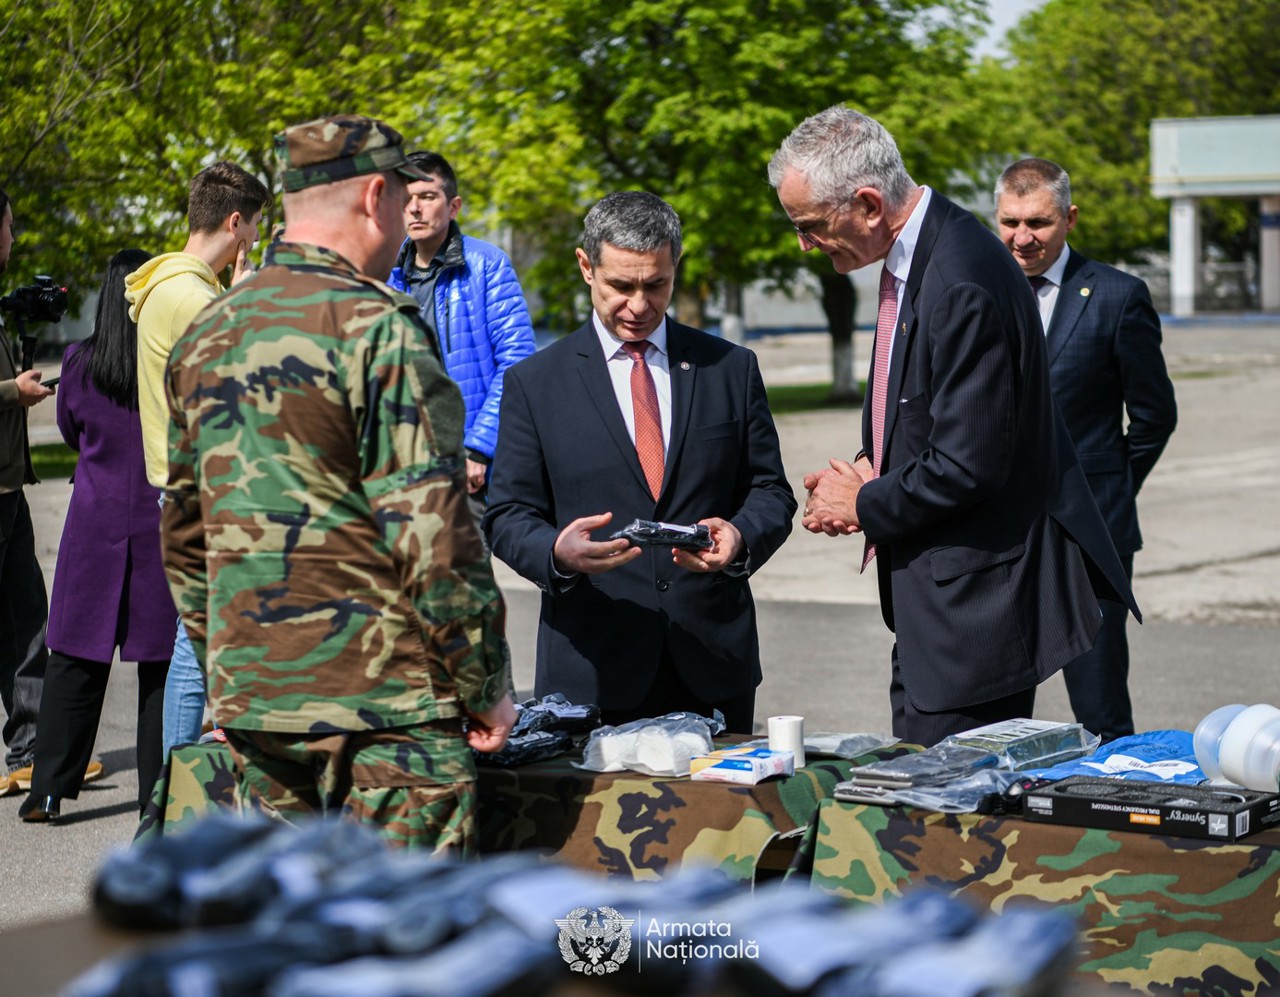 NATO a oferit Armatei Naționale un lot de echipamente medicale în valoare de 700 de mii de euro